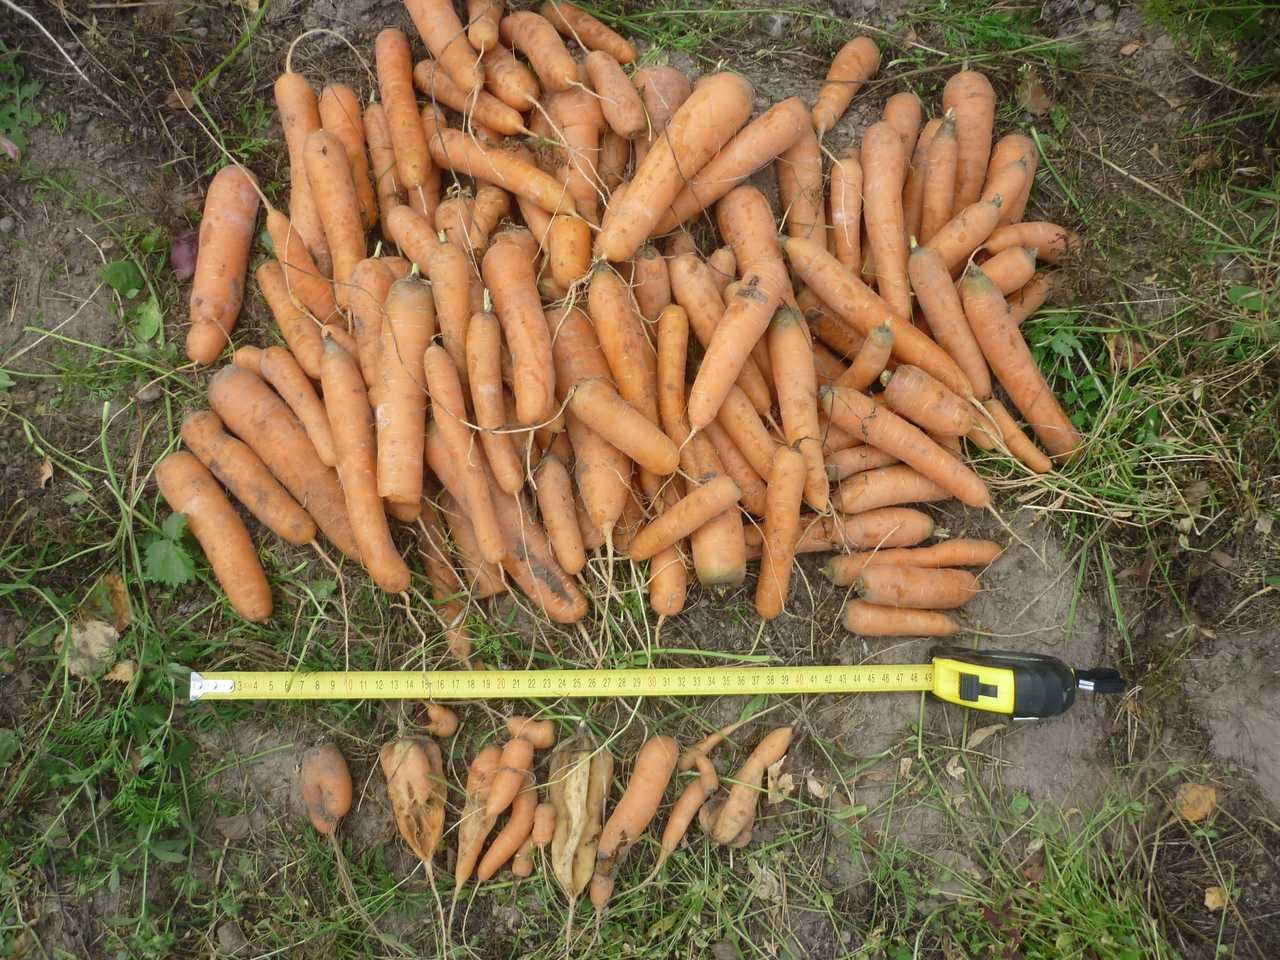 Как вырастить крупную и сладкую морковь? приёмы, агротехника, советы и секреты. фото — ботаничка